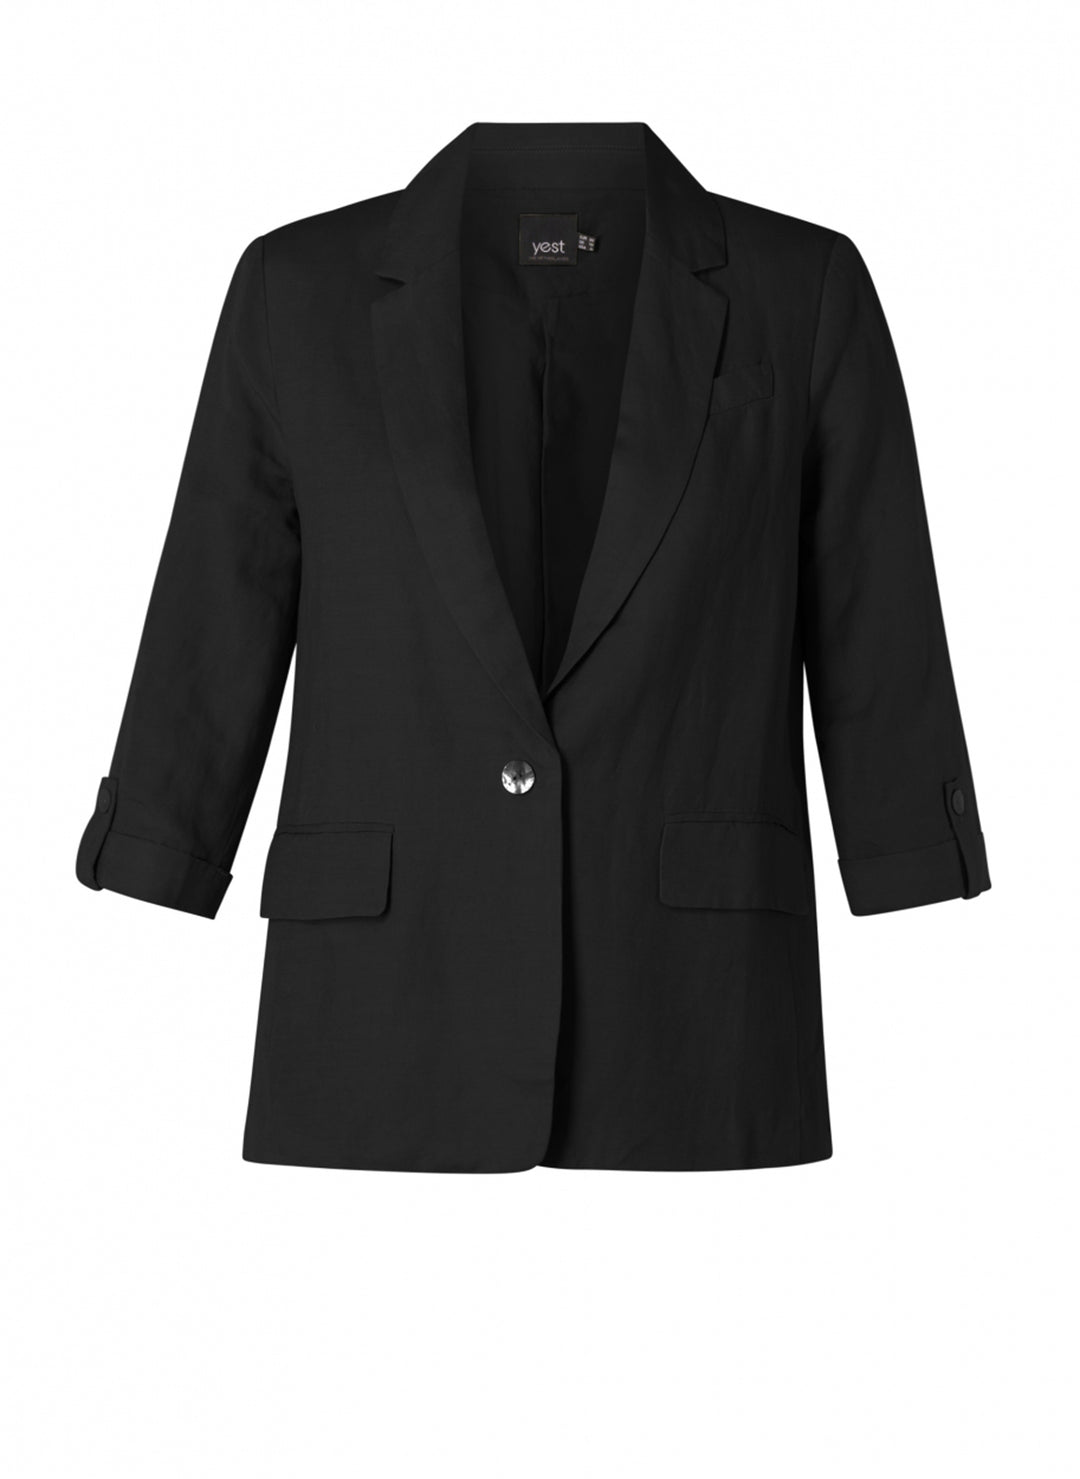 zwarte linnen blazer - yesta - - grote maten - dameskleding - kledingwinkel - herent - leuven